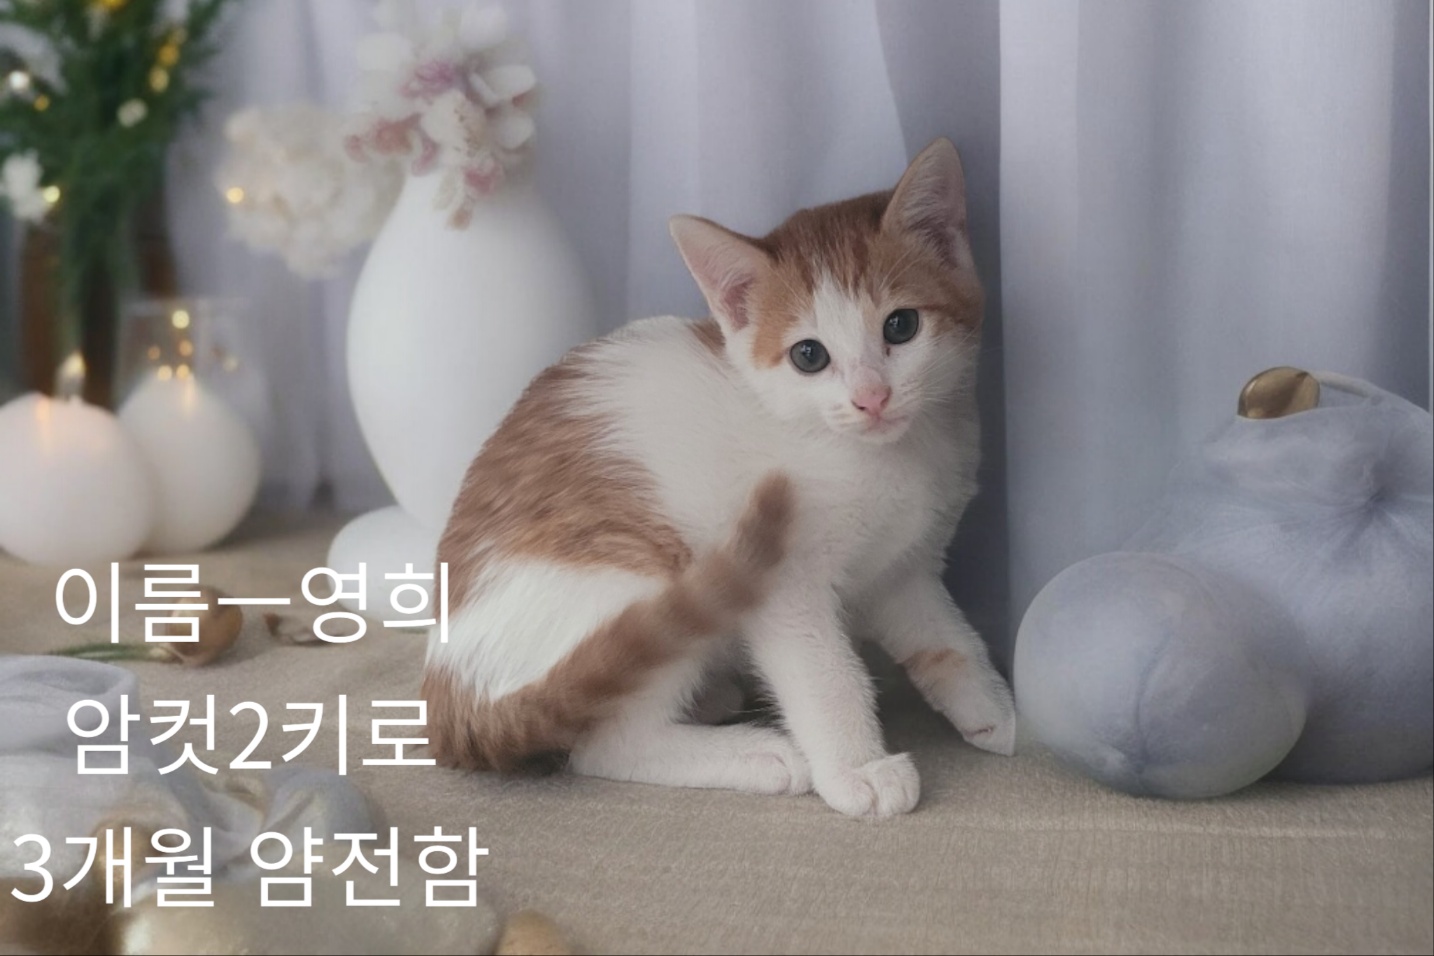 공고 번호가 경북-성주-2024-00248인 한국 고양이 동물 사진